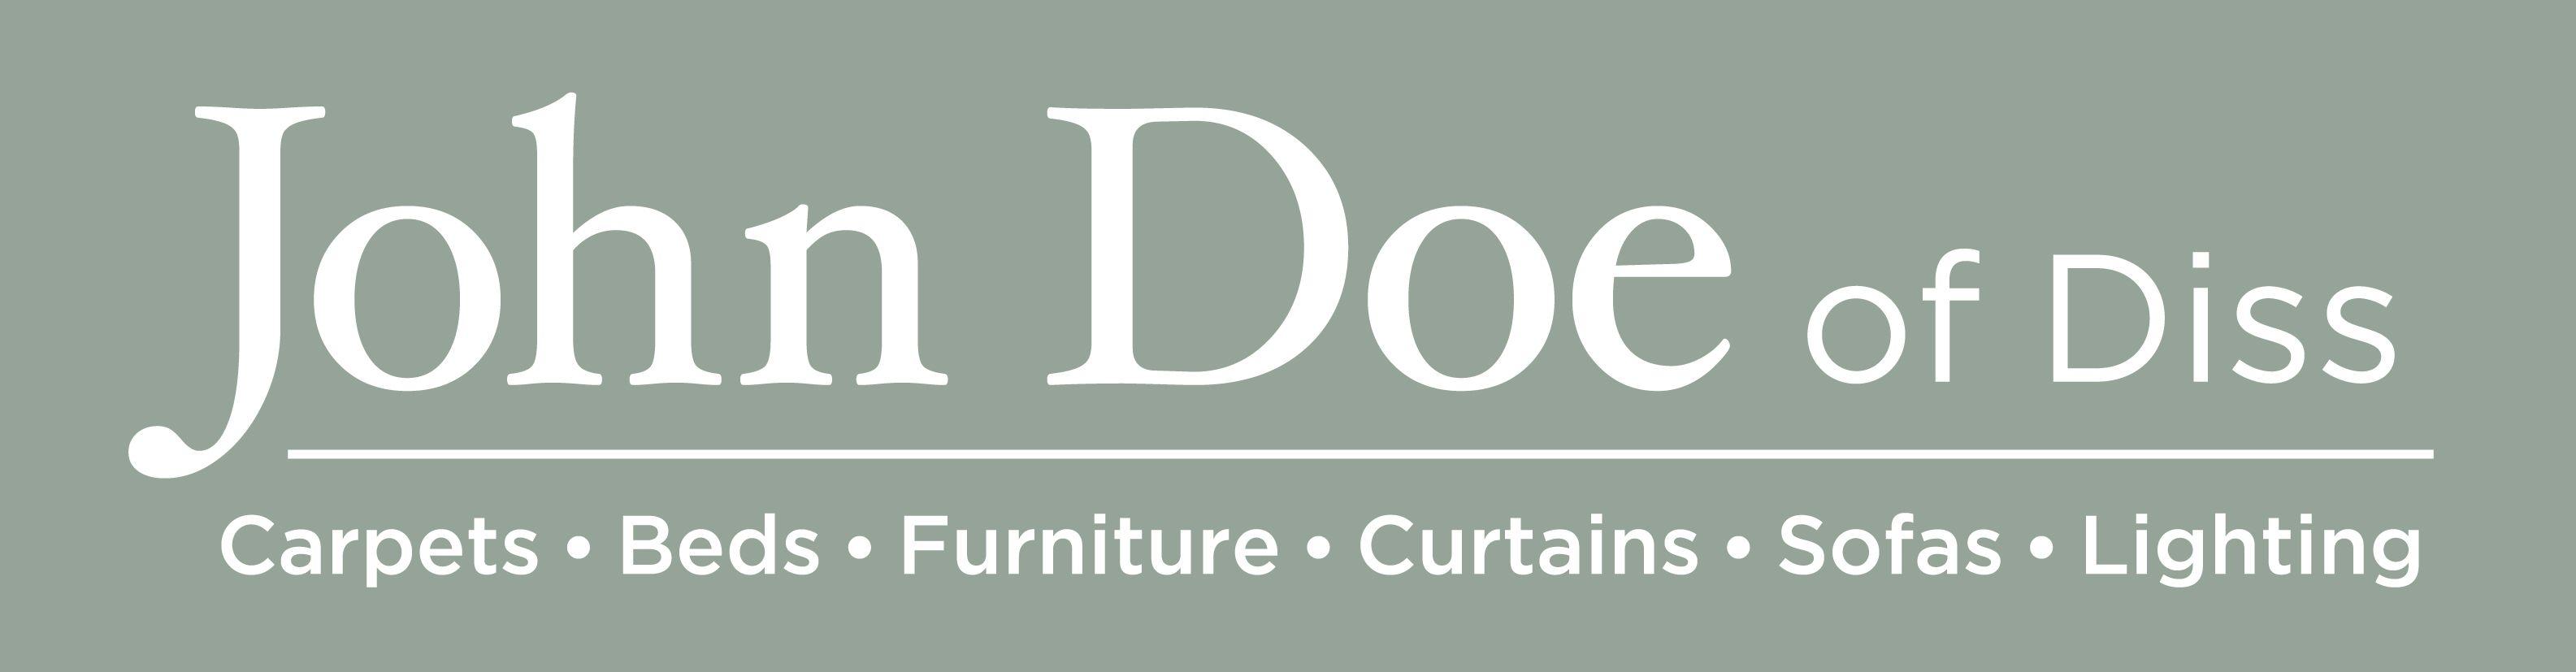 Doe Logo - Spider. Fixed Fee Web Recruitment. John Doe Logo. Fixed